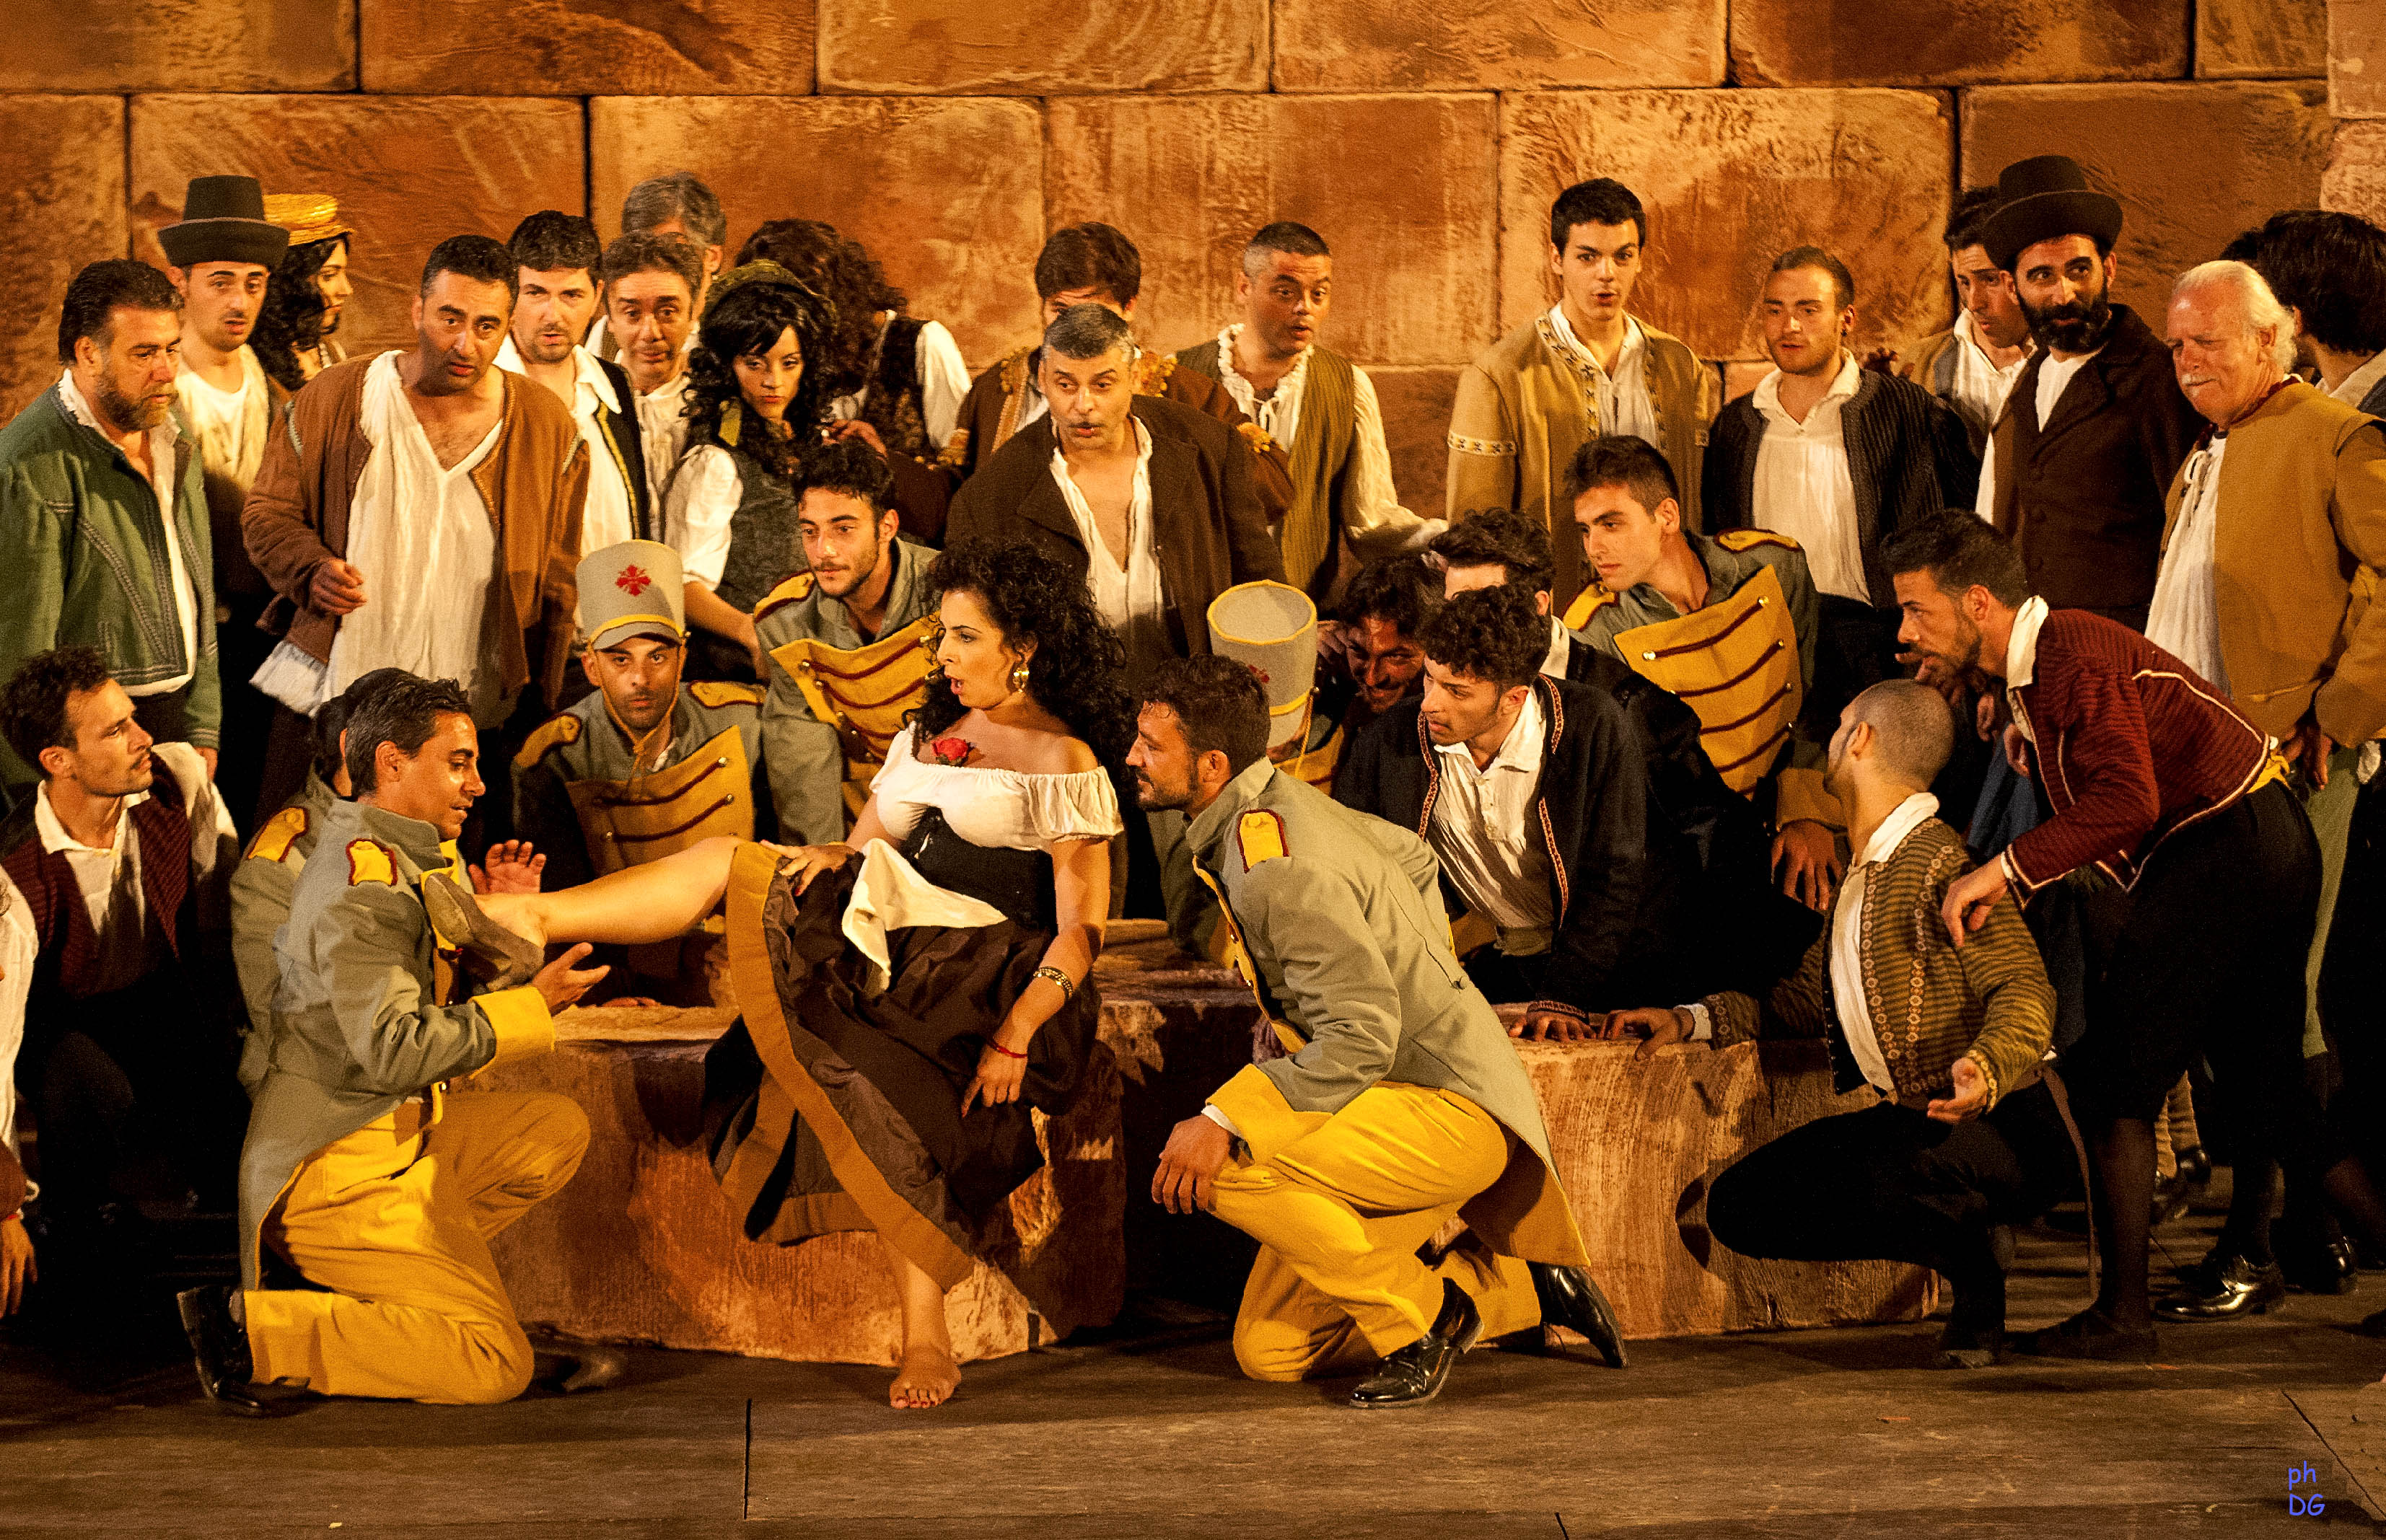 Domani apre i battenti il Taormina Opera Festival con “Carmen” di Bizet